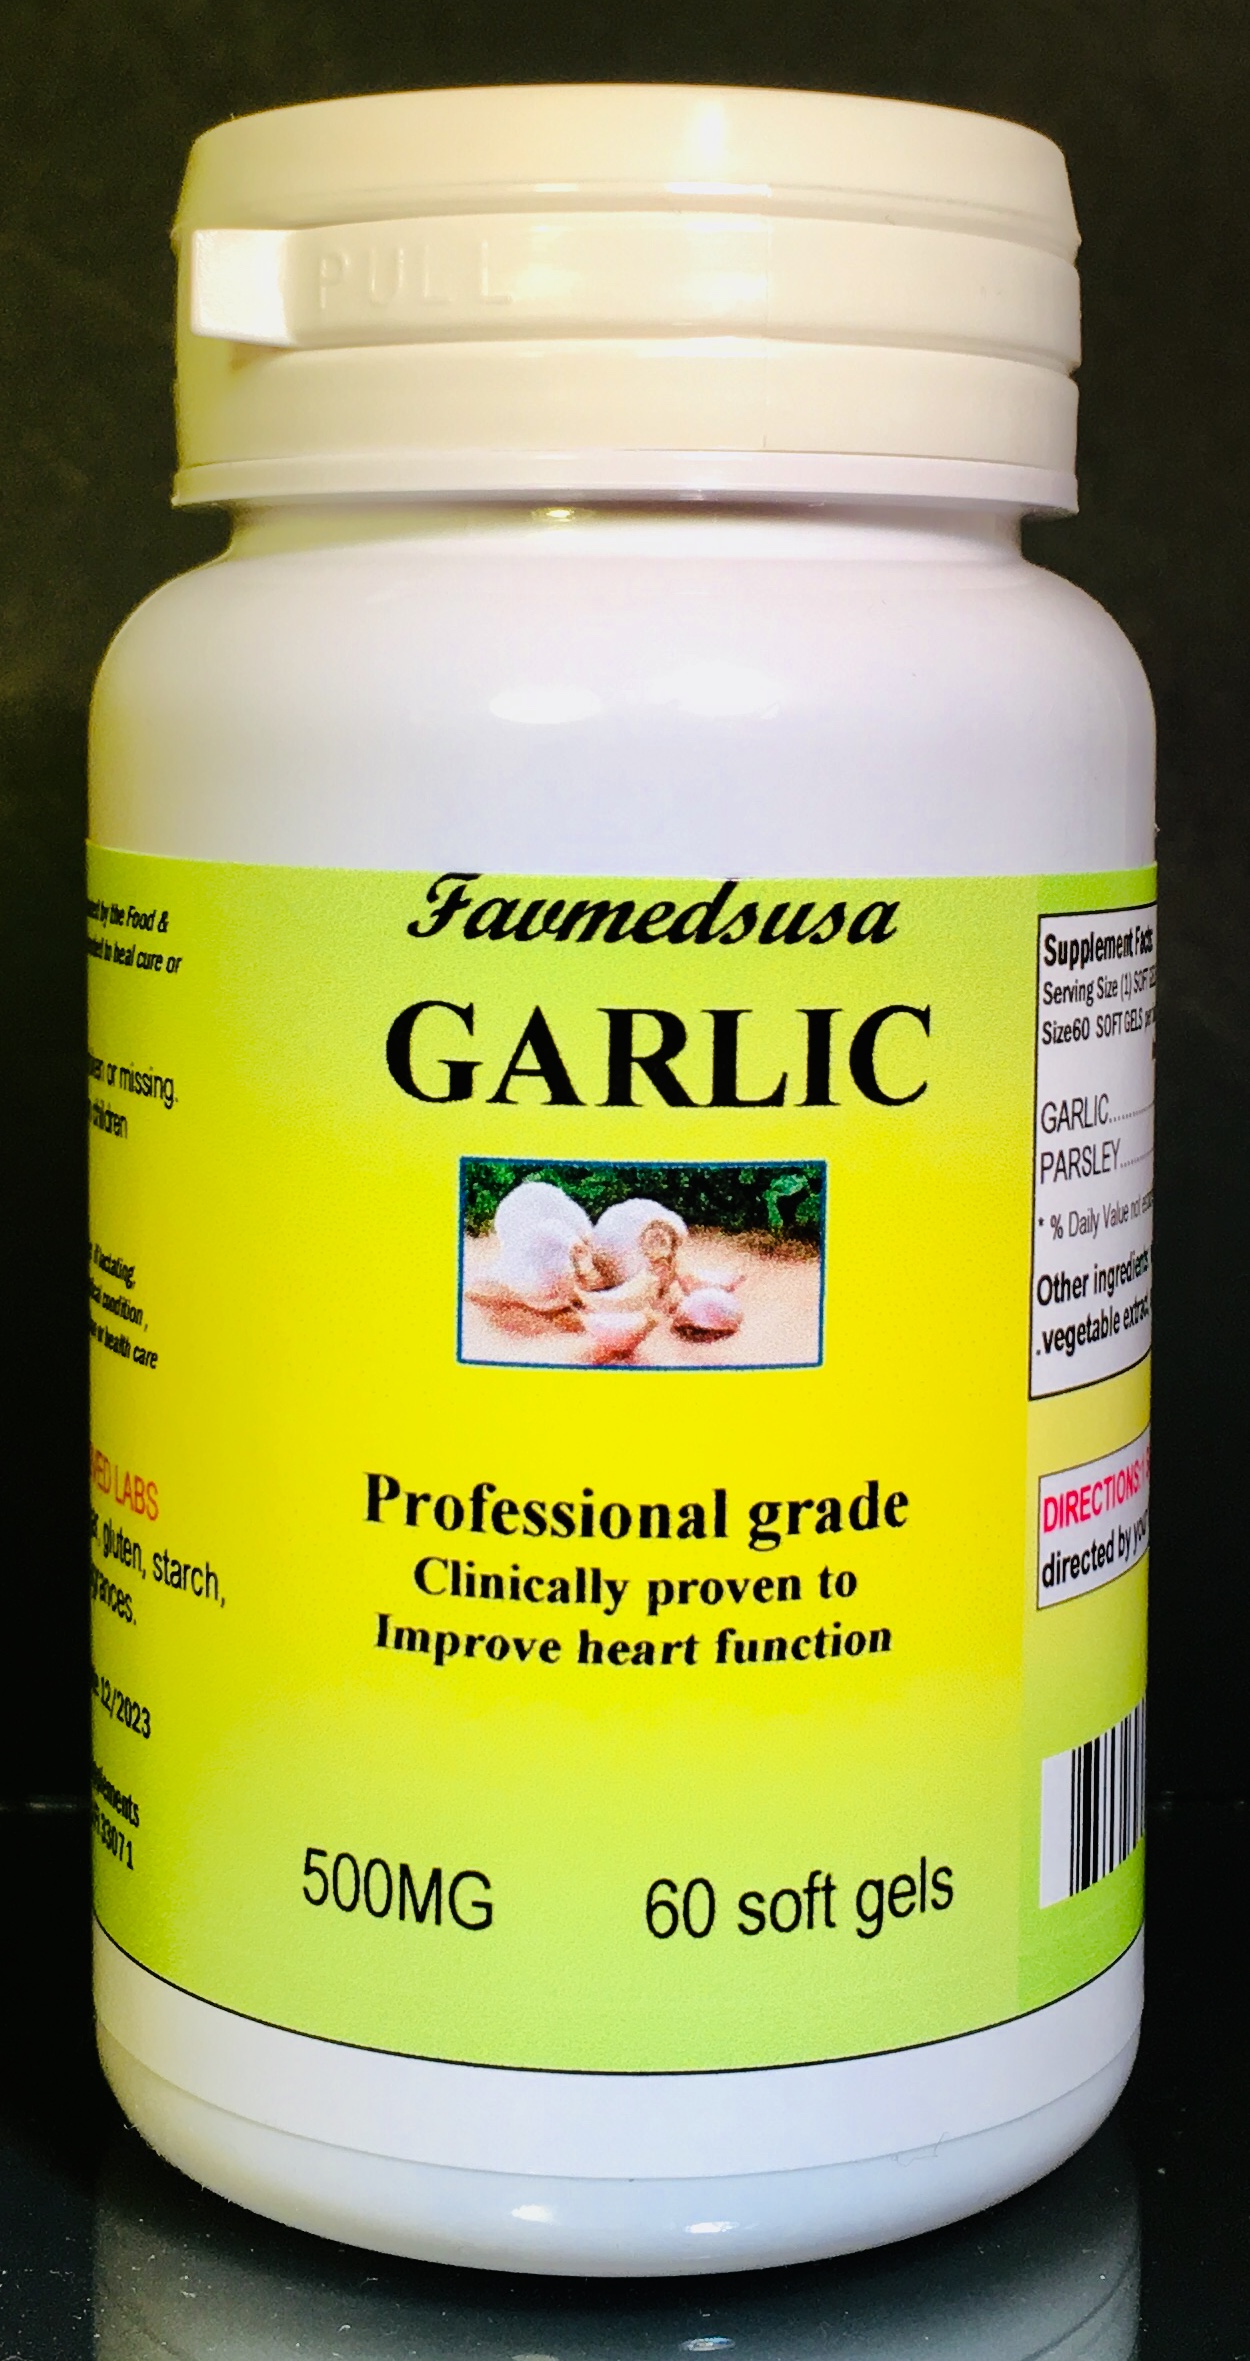 Garlic Parsley - 60 soft gels